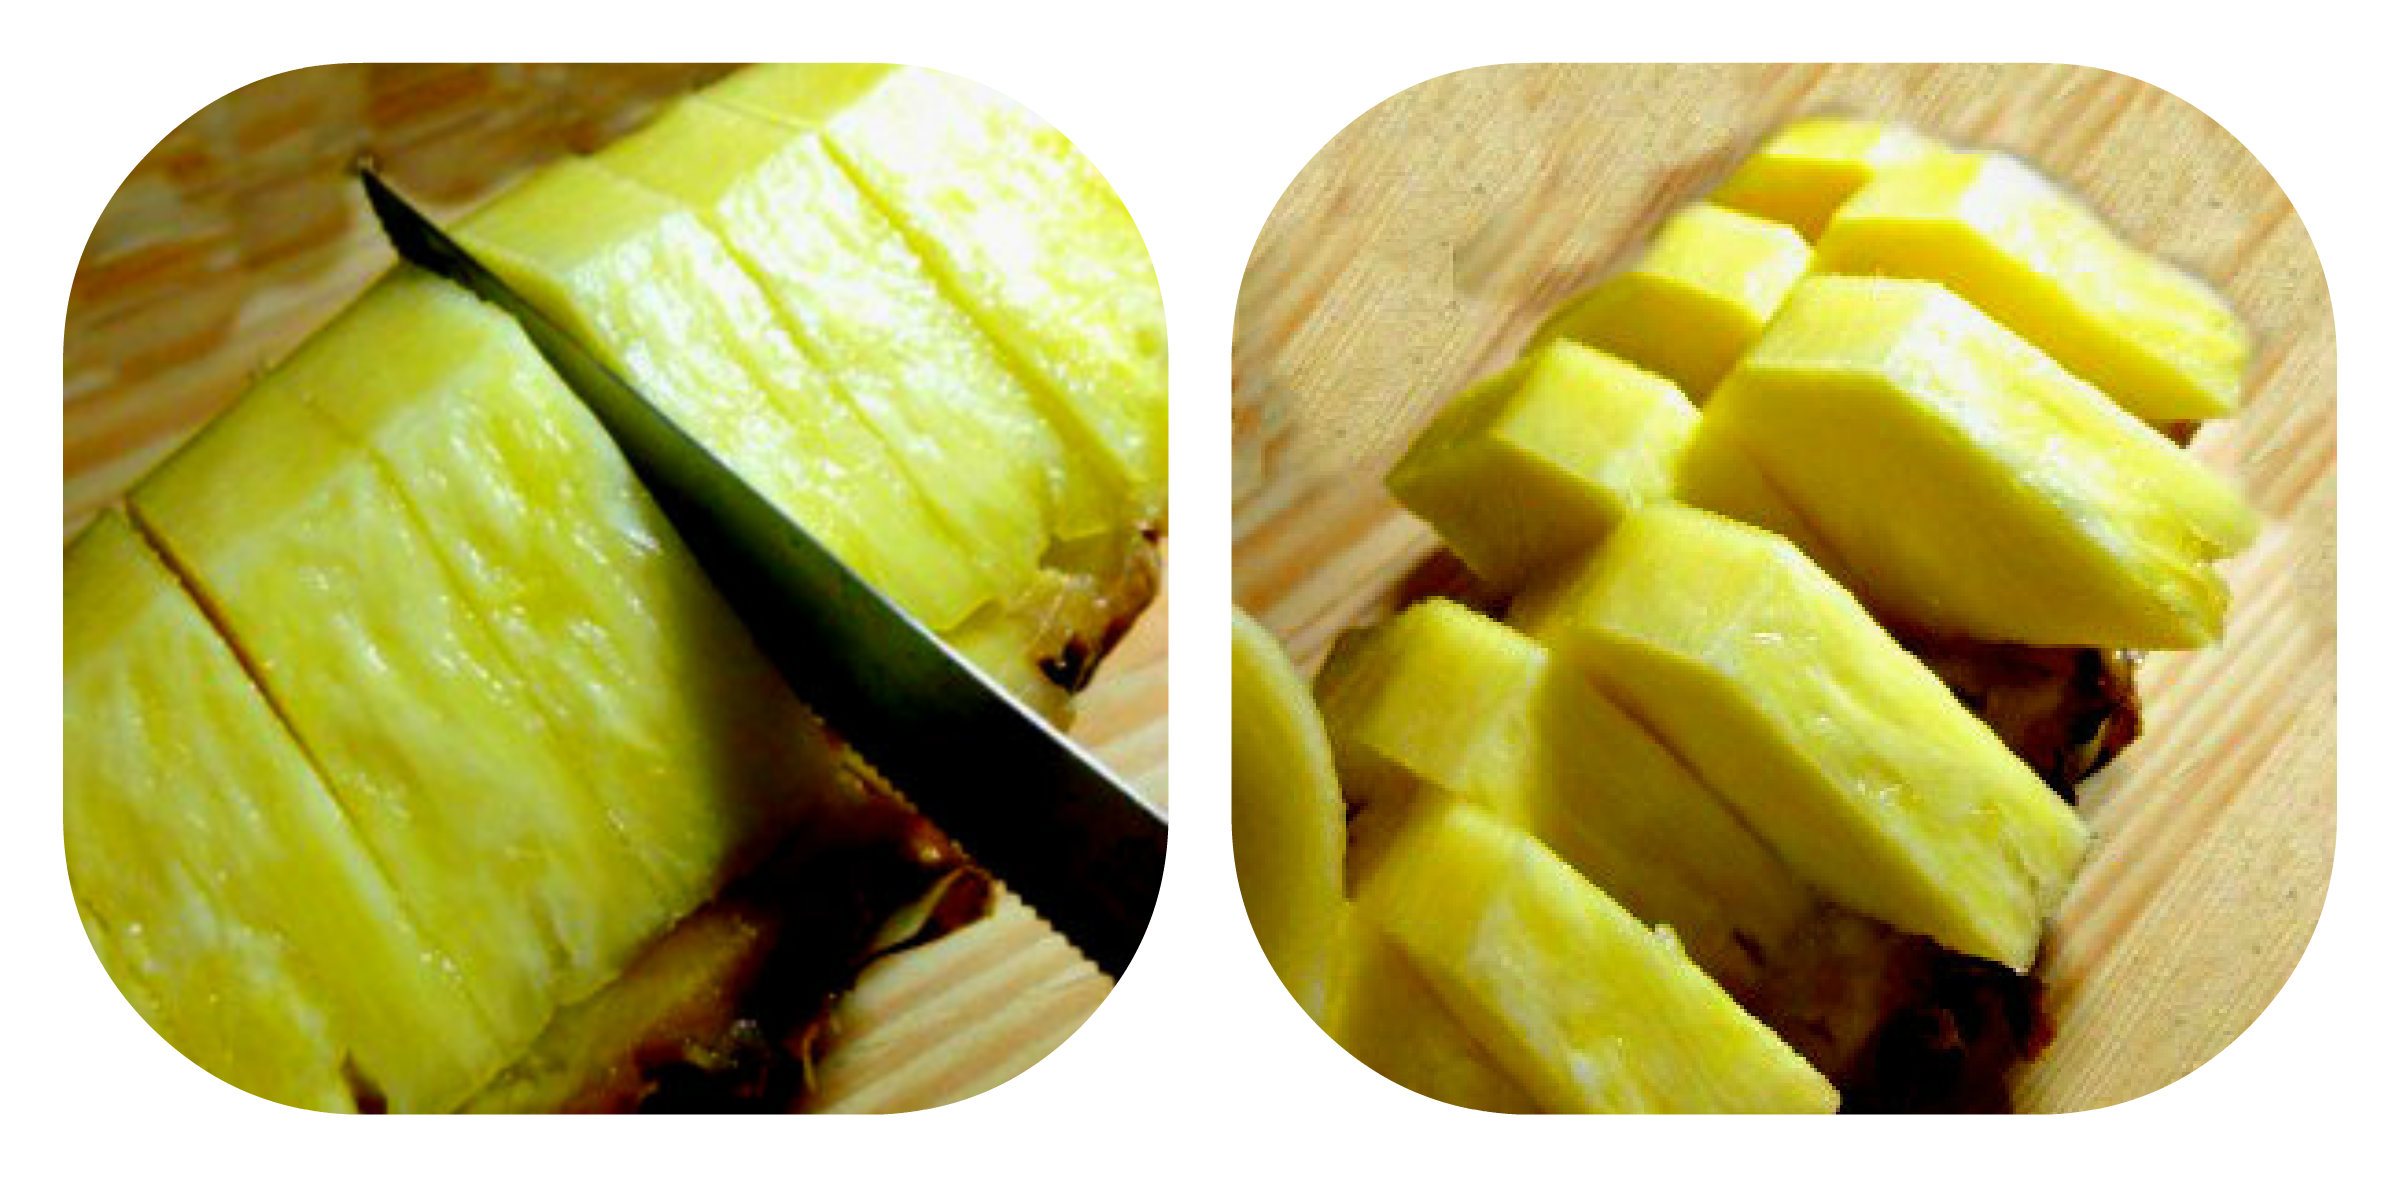 Come si taglia l’ananas a cigno